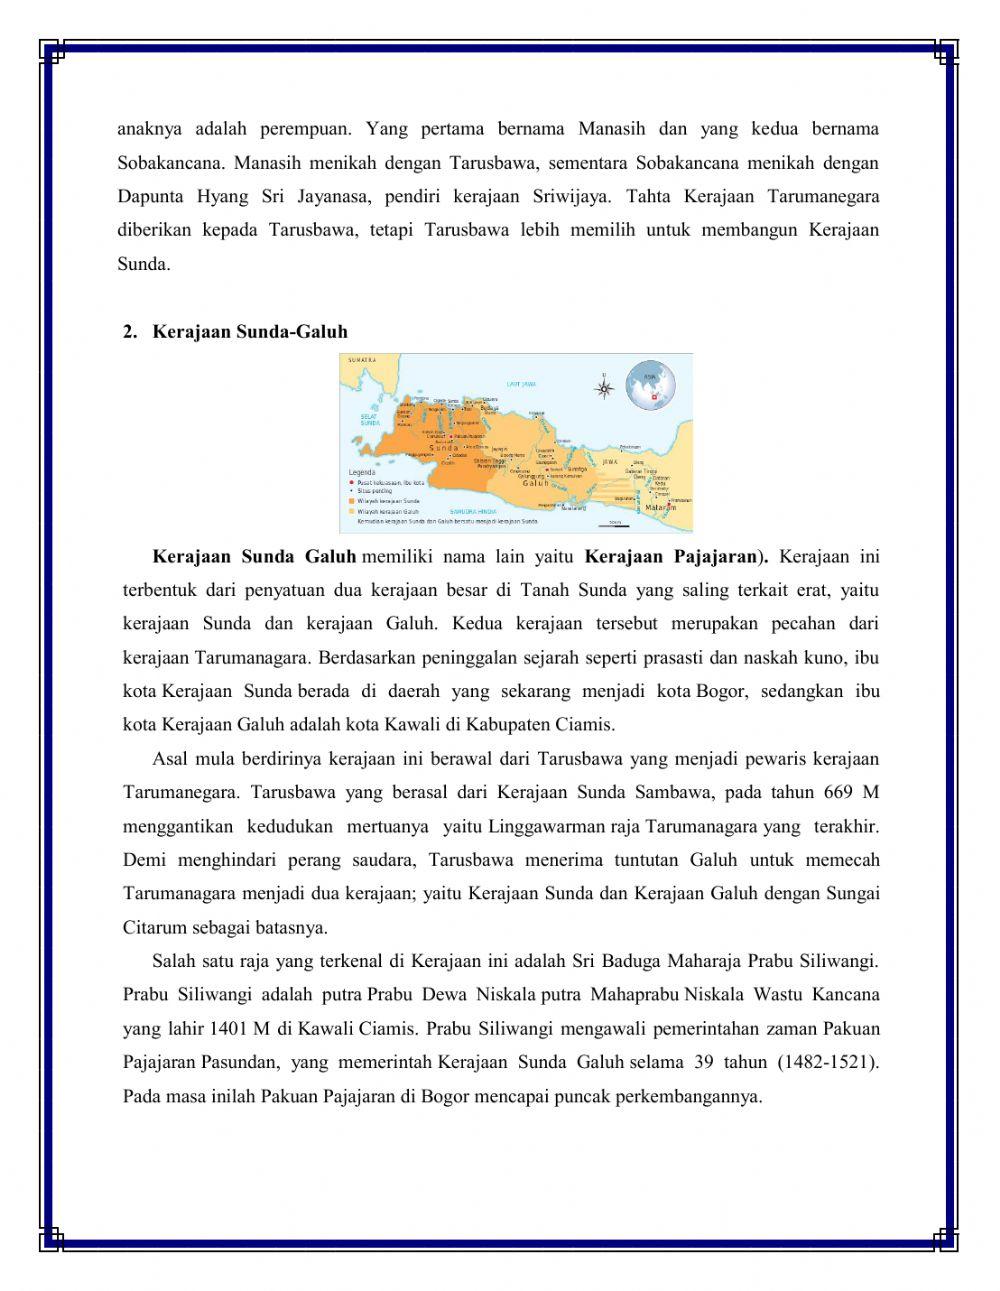 Kerajaan di Indonesia